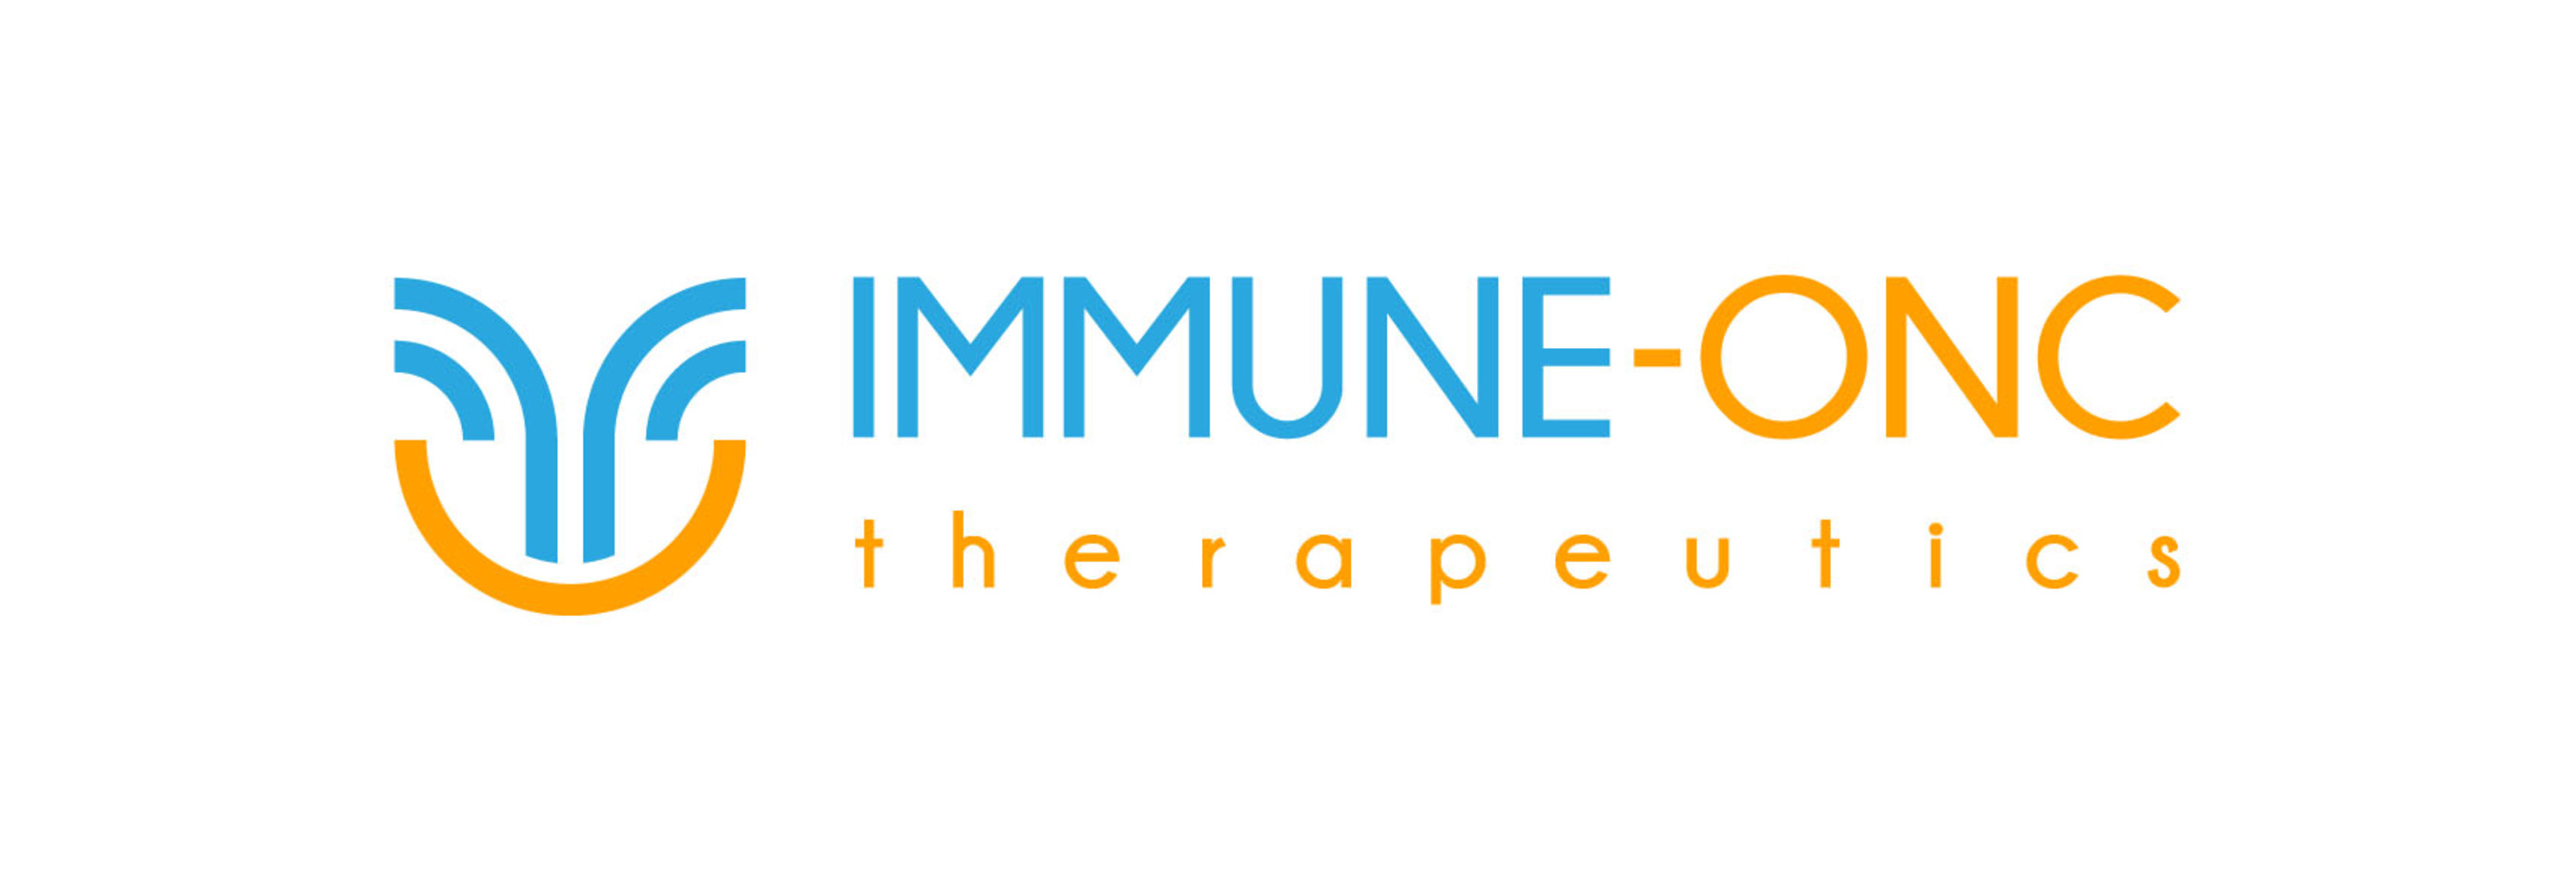 Immune-onc Therapeutics